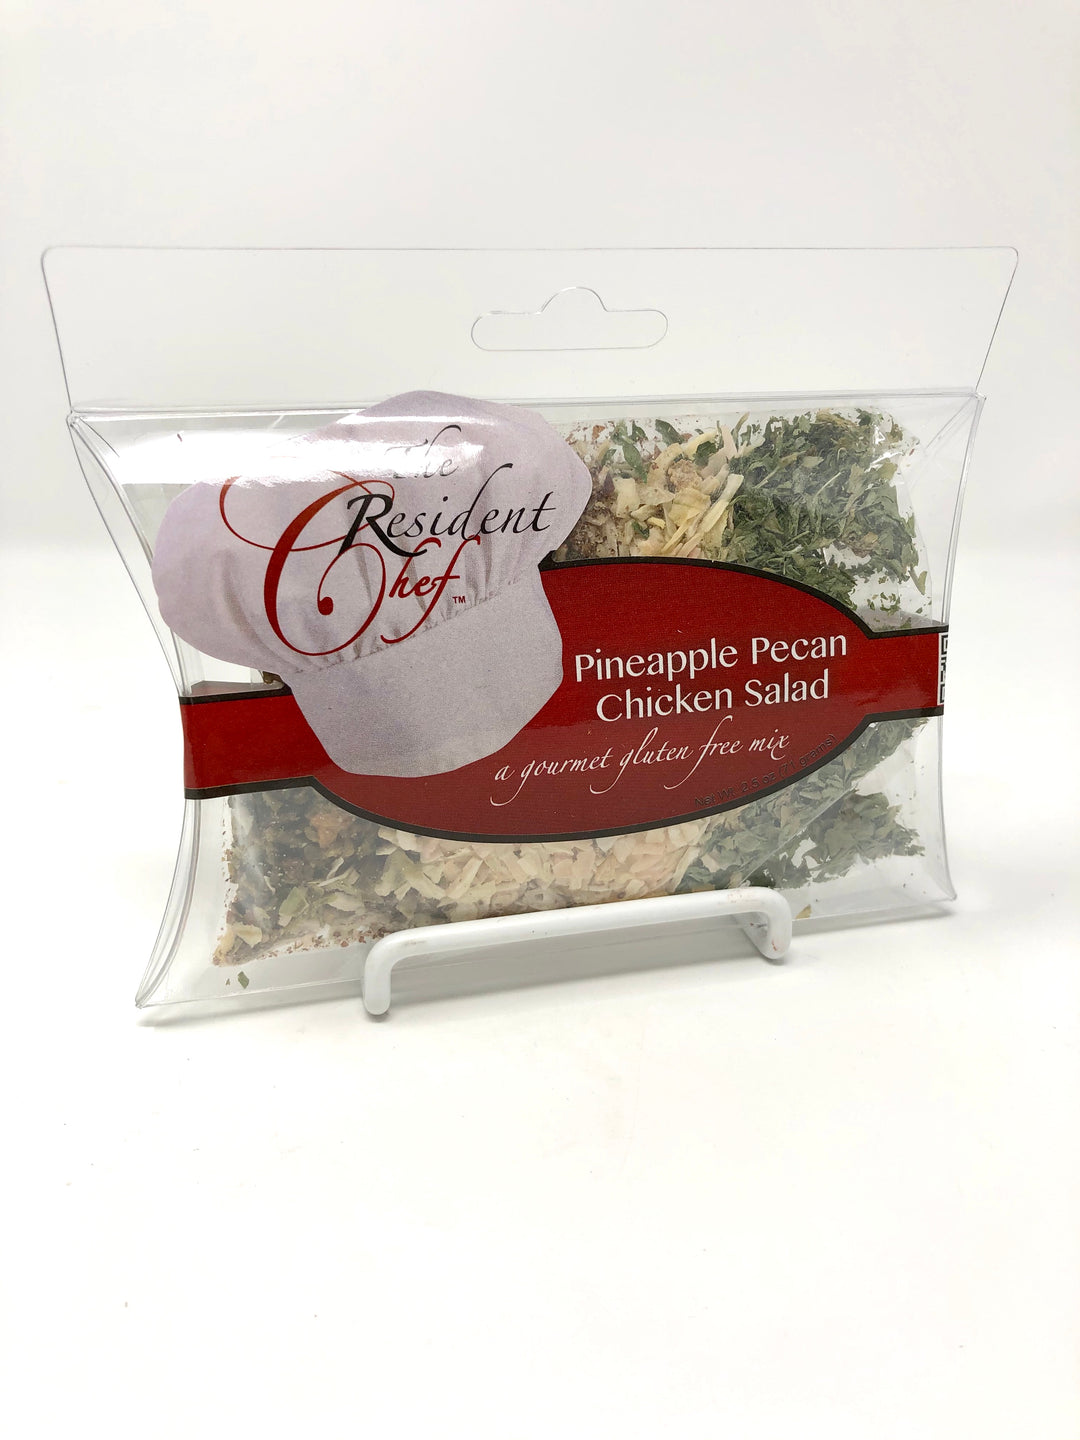 Kuhn Rikon Salad Maker – The Cook's Nook